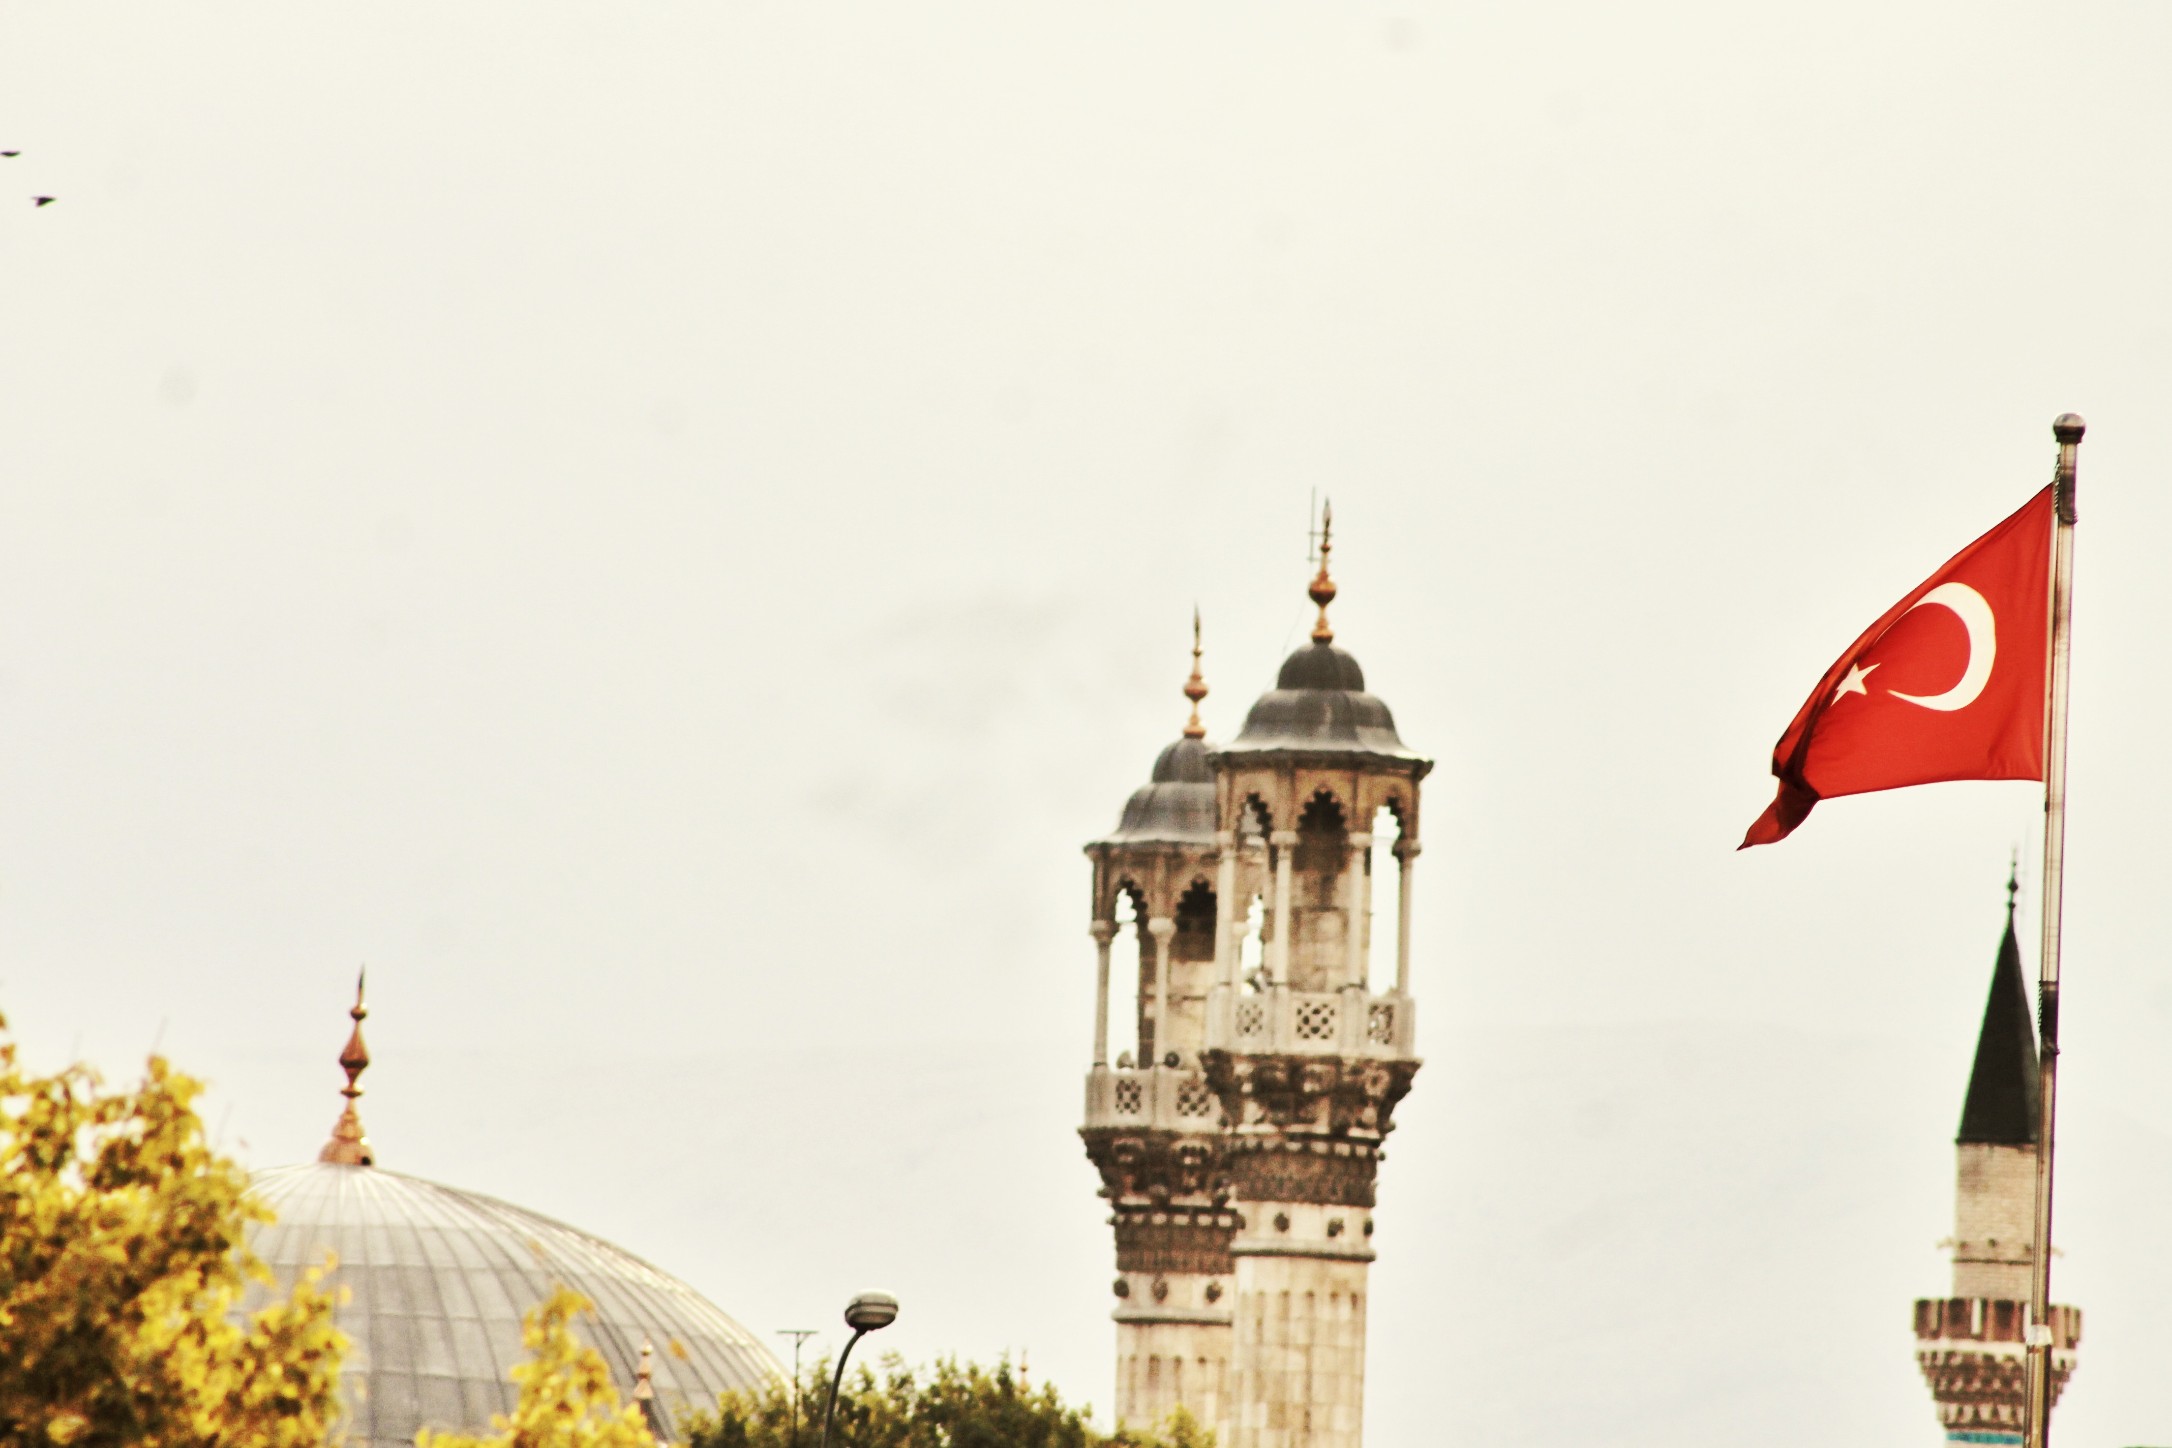 turkey bayrak ayyıldız camii image by hasankonukk